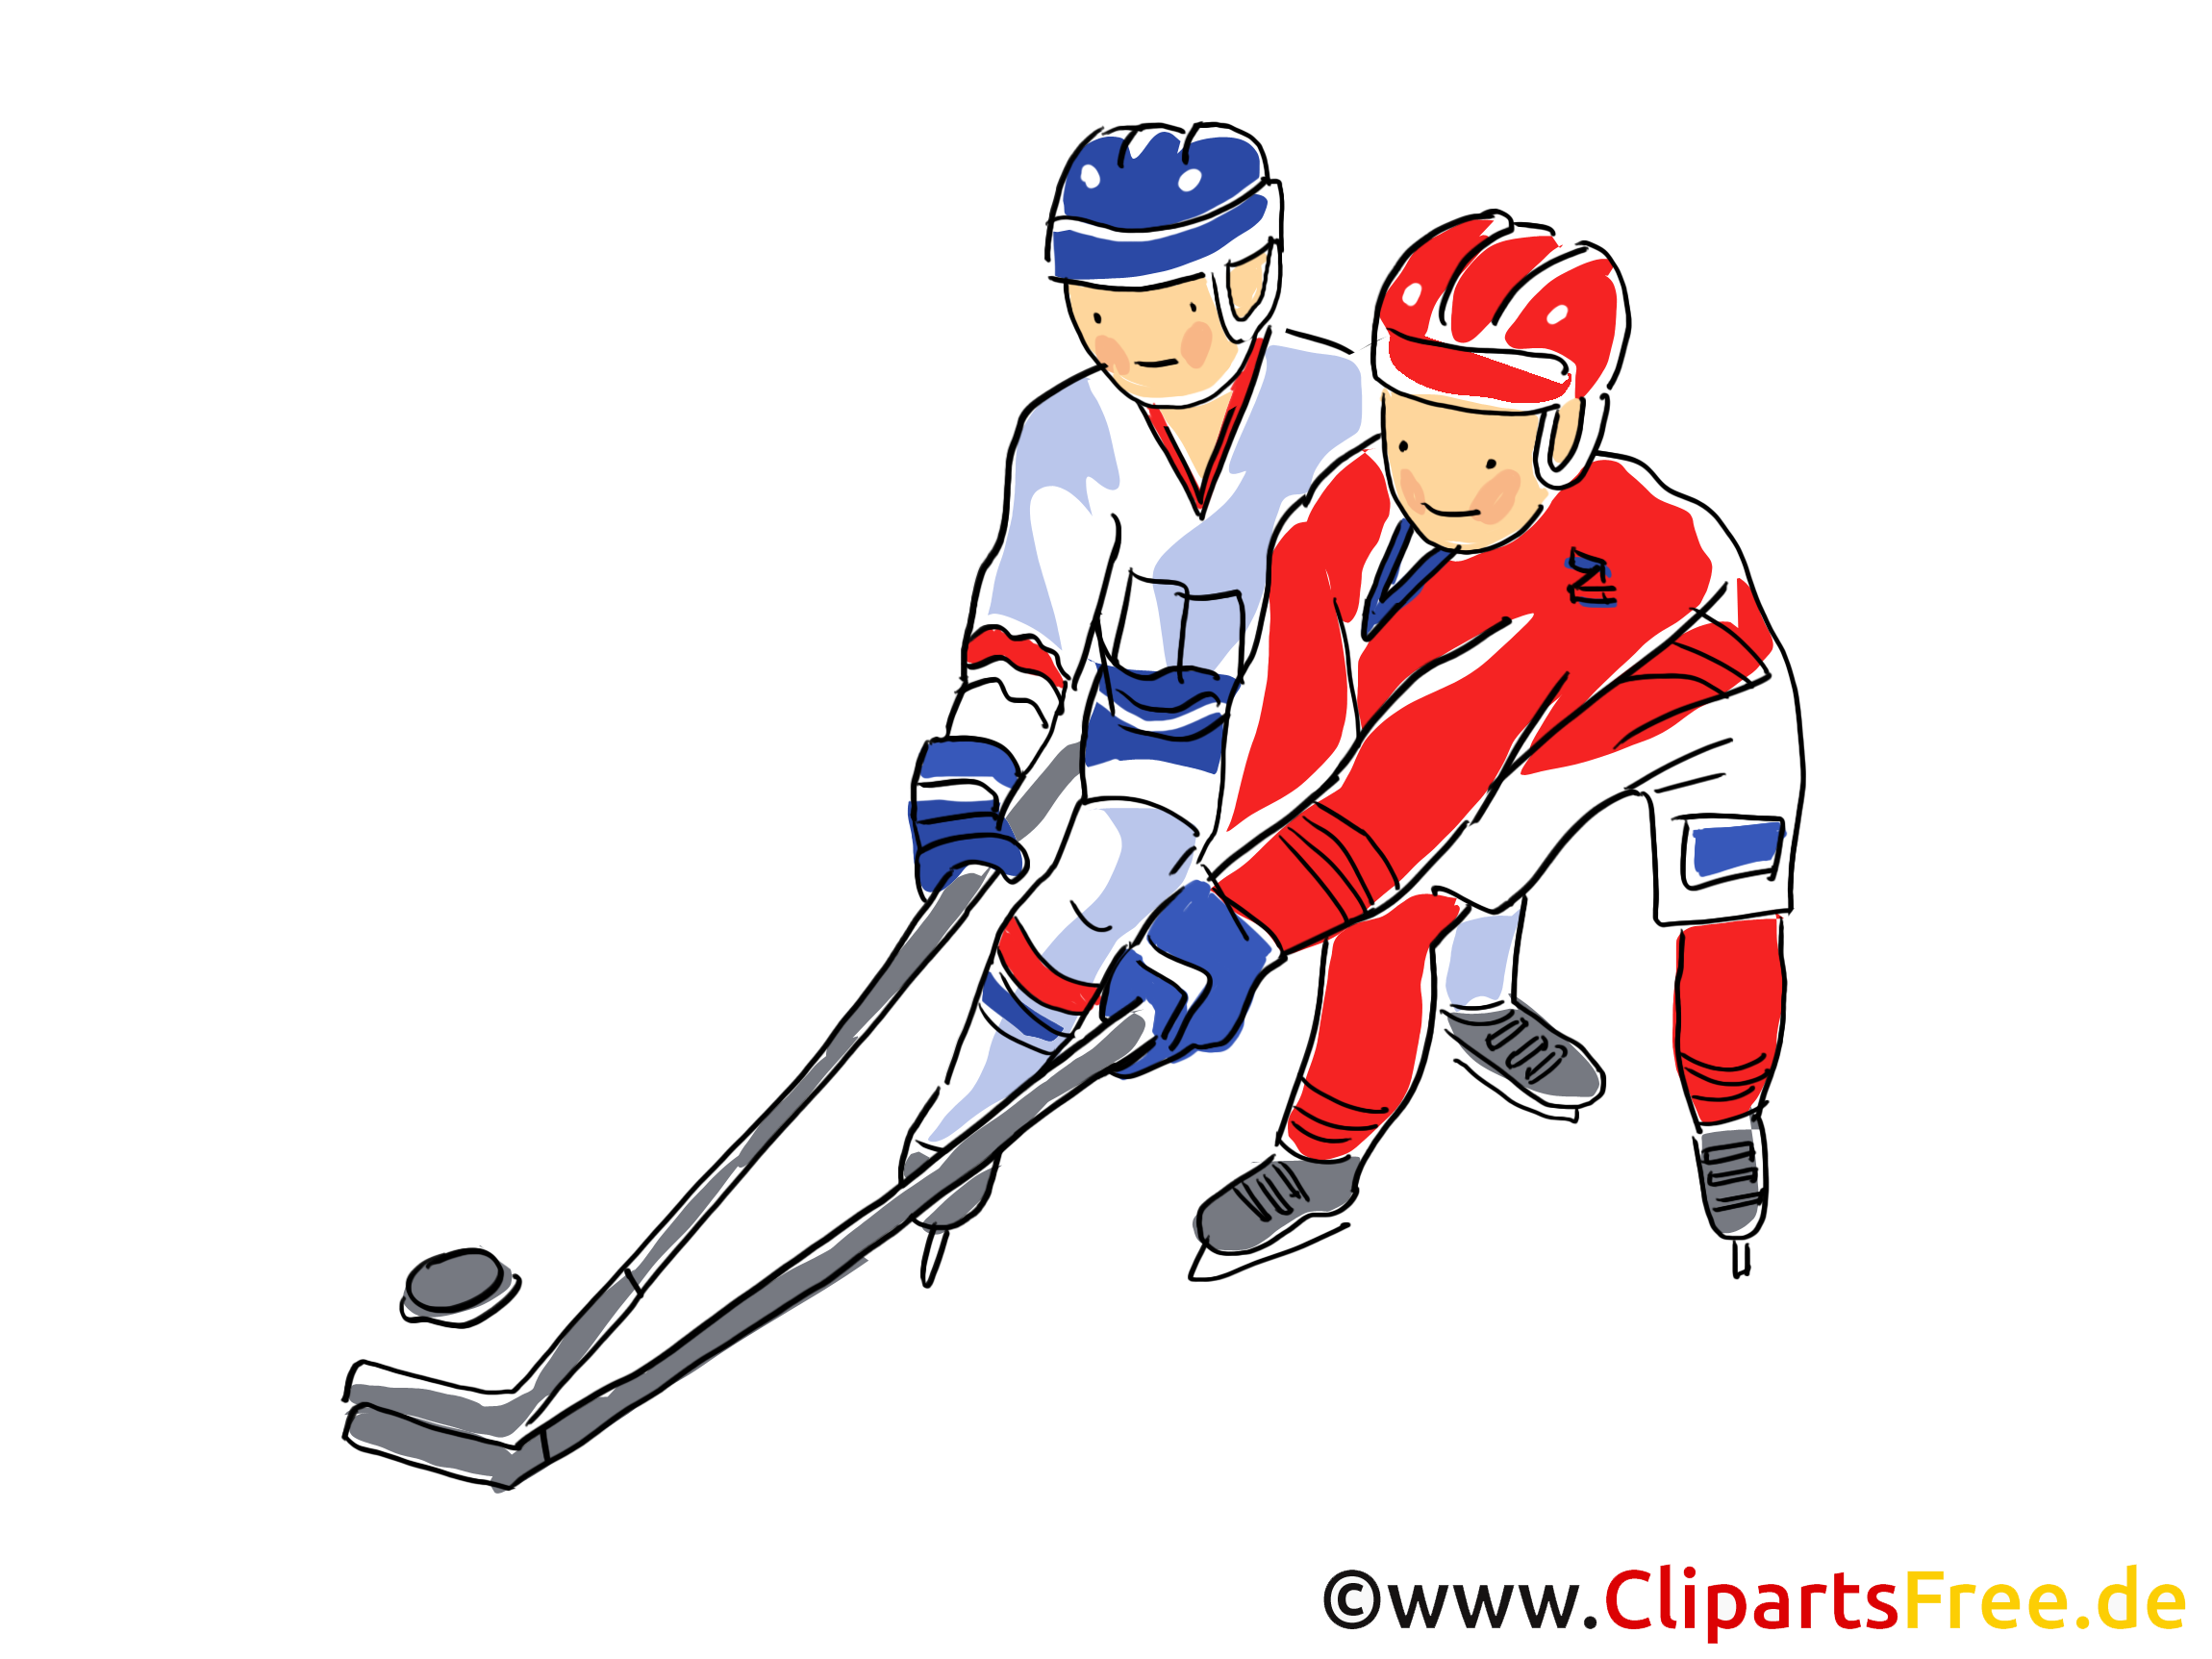 アイスホッケー世界選手権イラスト クリップアート 画像 コミック 漫画無料